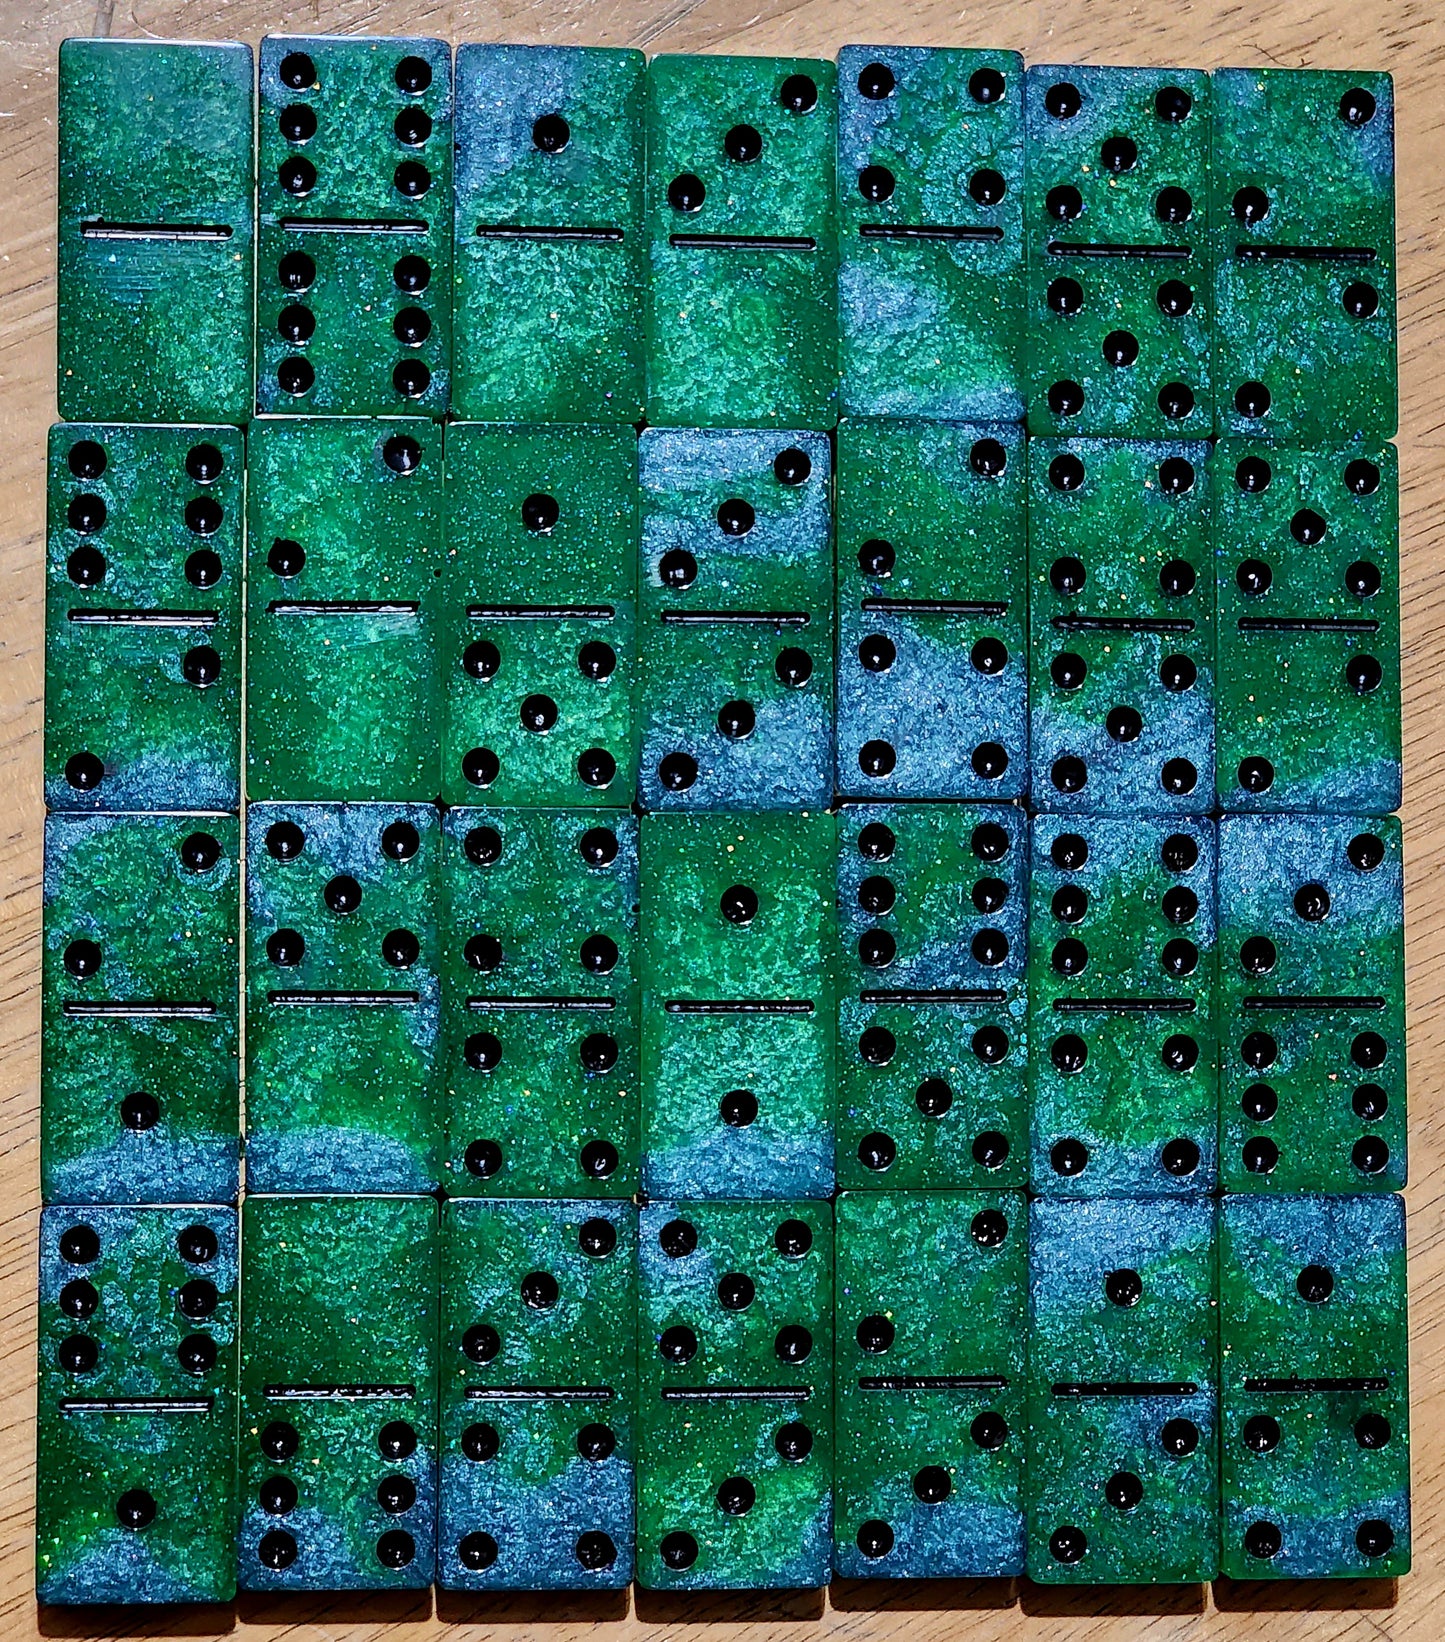 6x6 Green & Blue Dominos